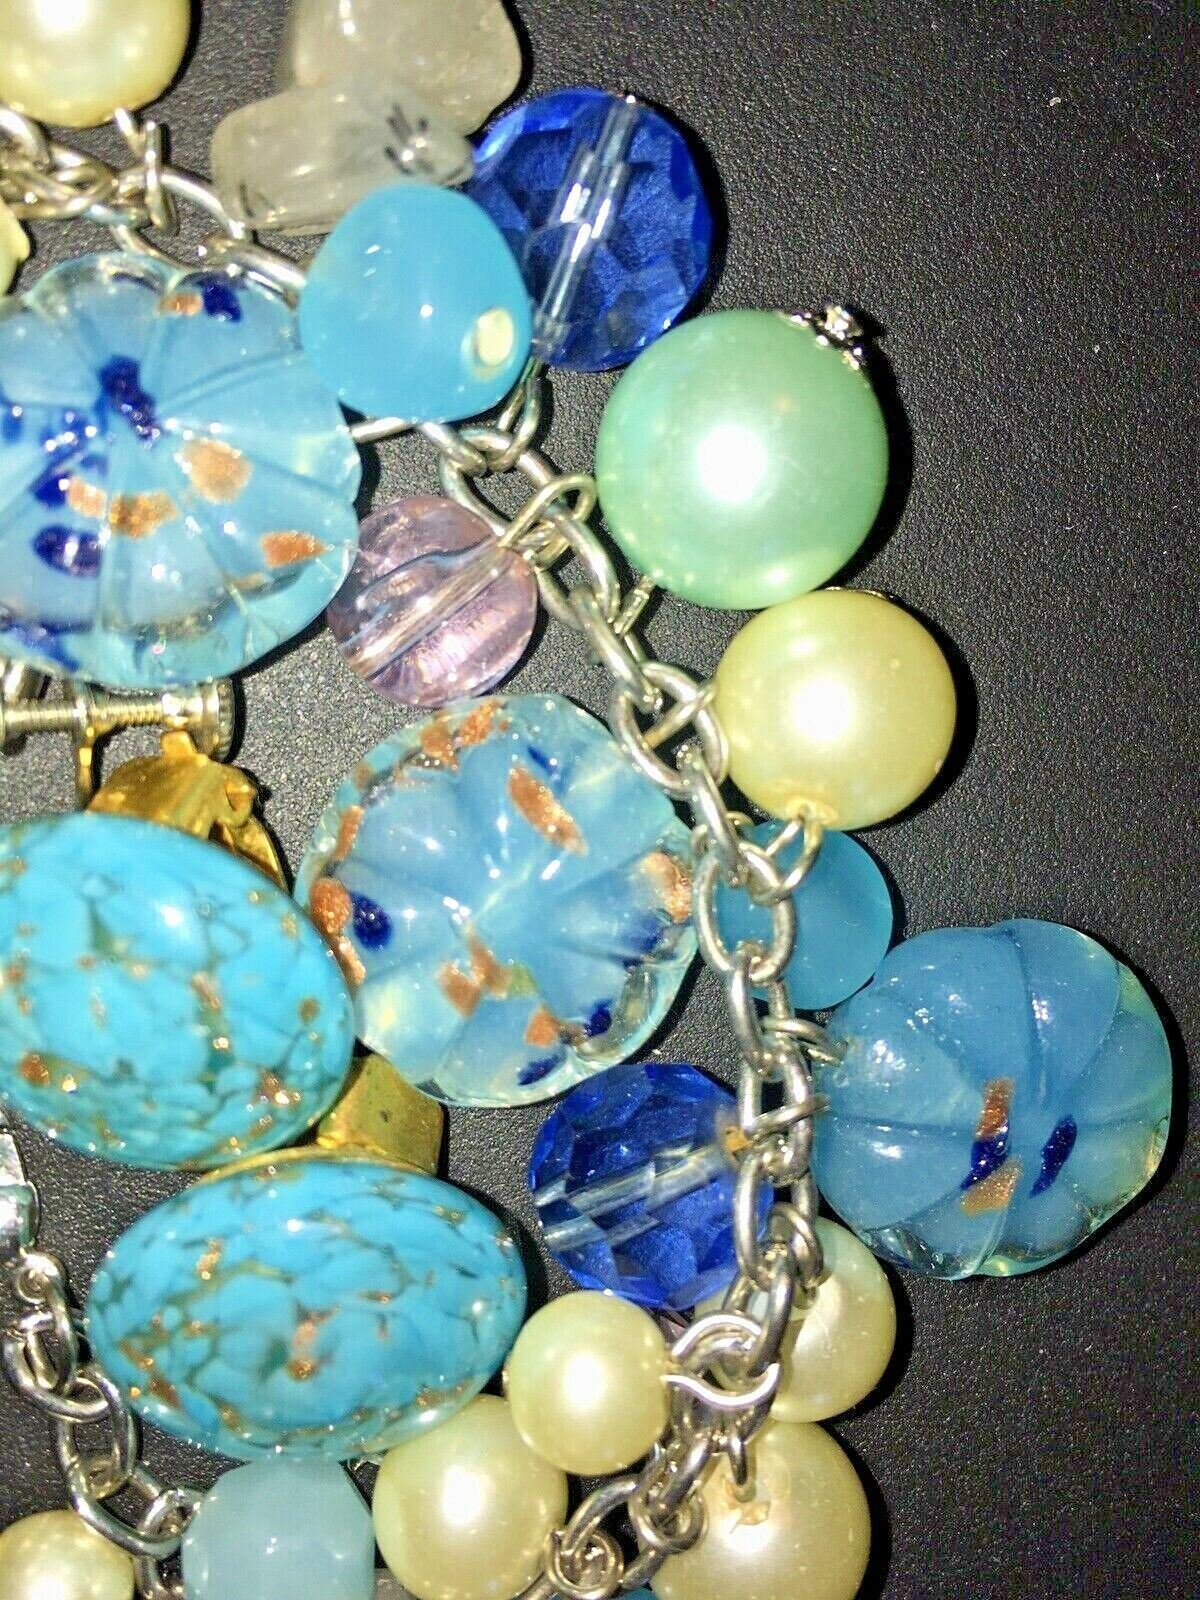 Vntg/Antq Blue Cha Cha Murano Bracelet & 2 Two sets earrings, venetian art glass